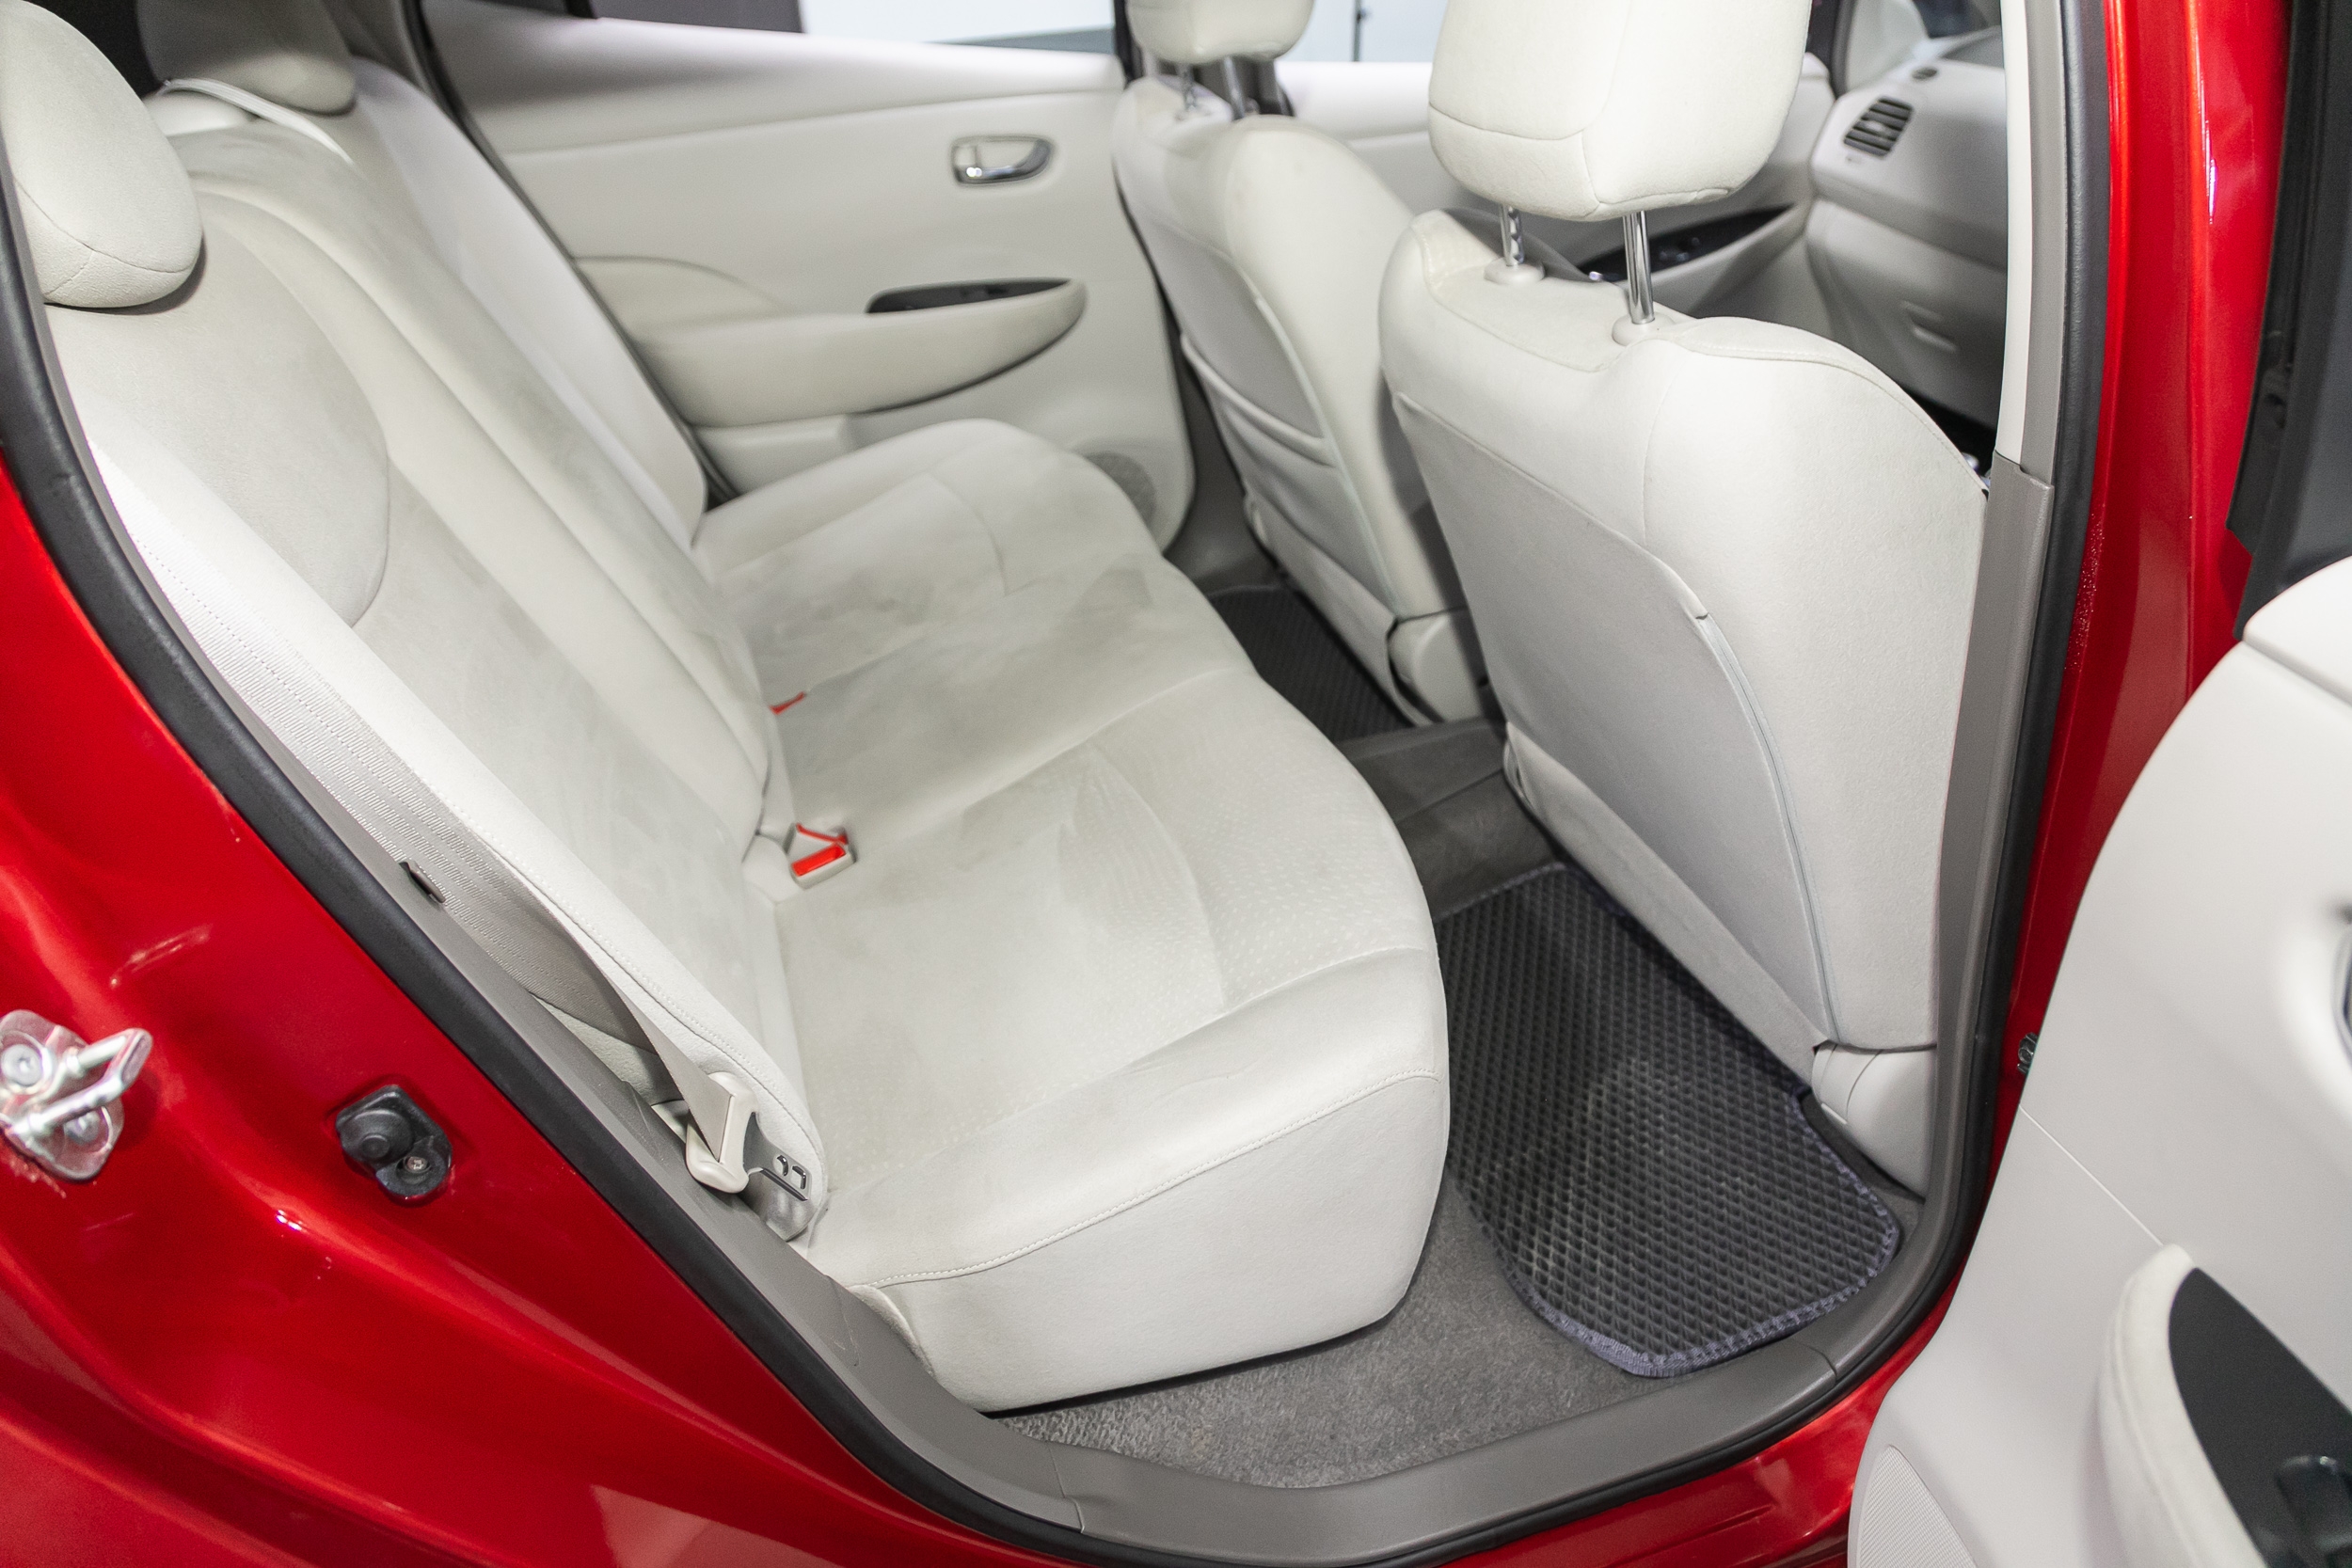 Nissan Leaf back interior